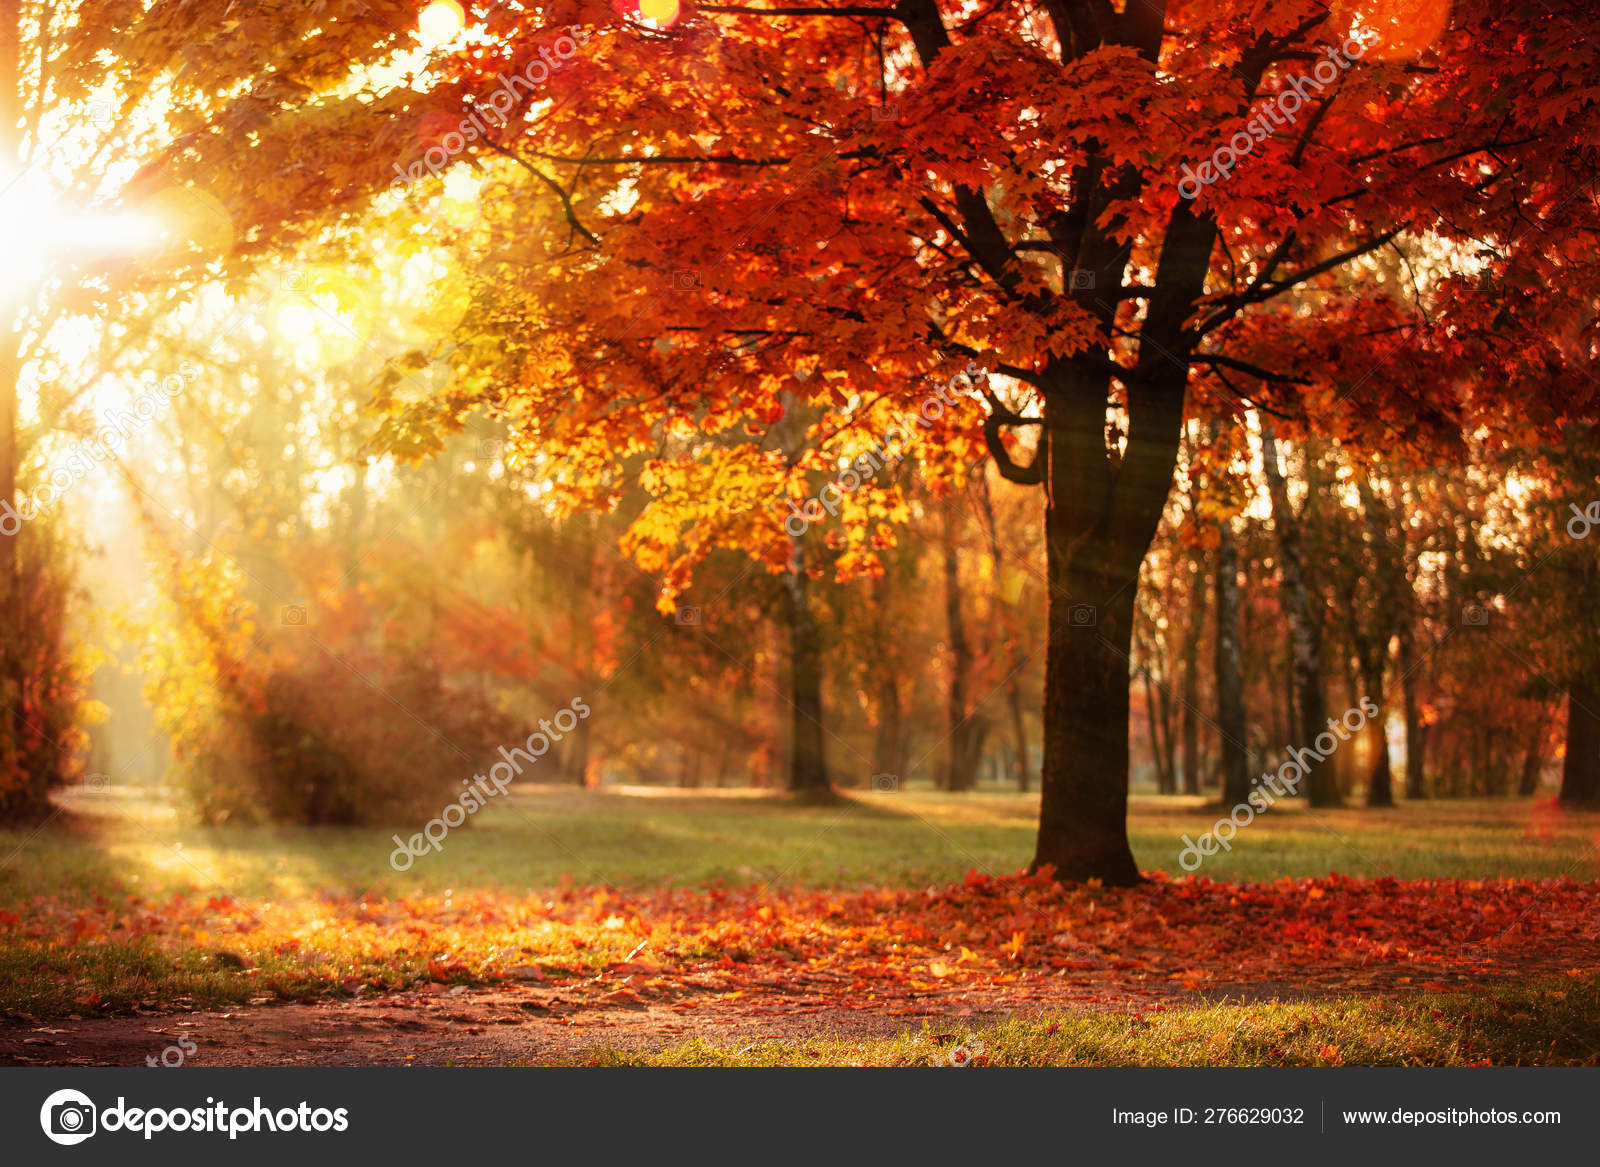 Autumn landscape pictures